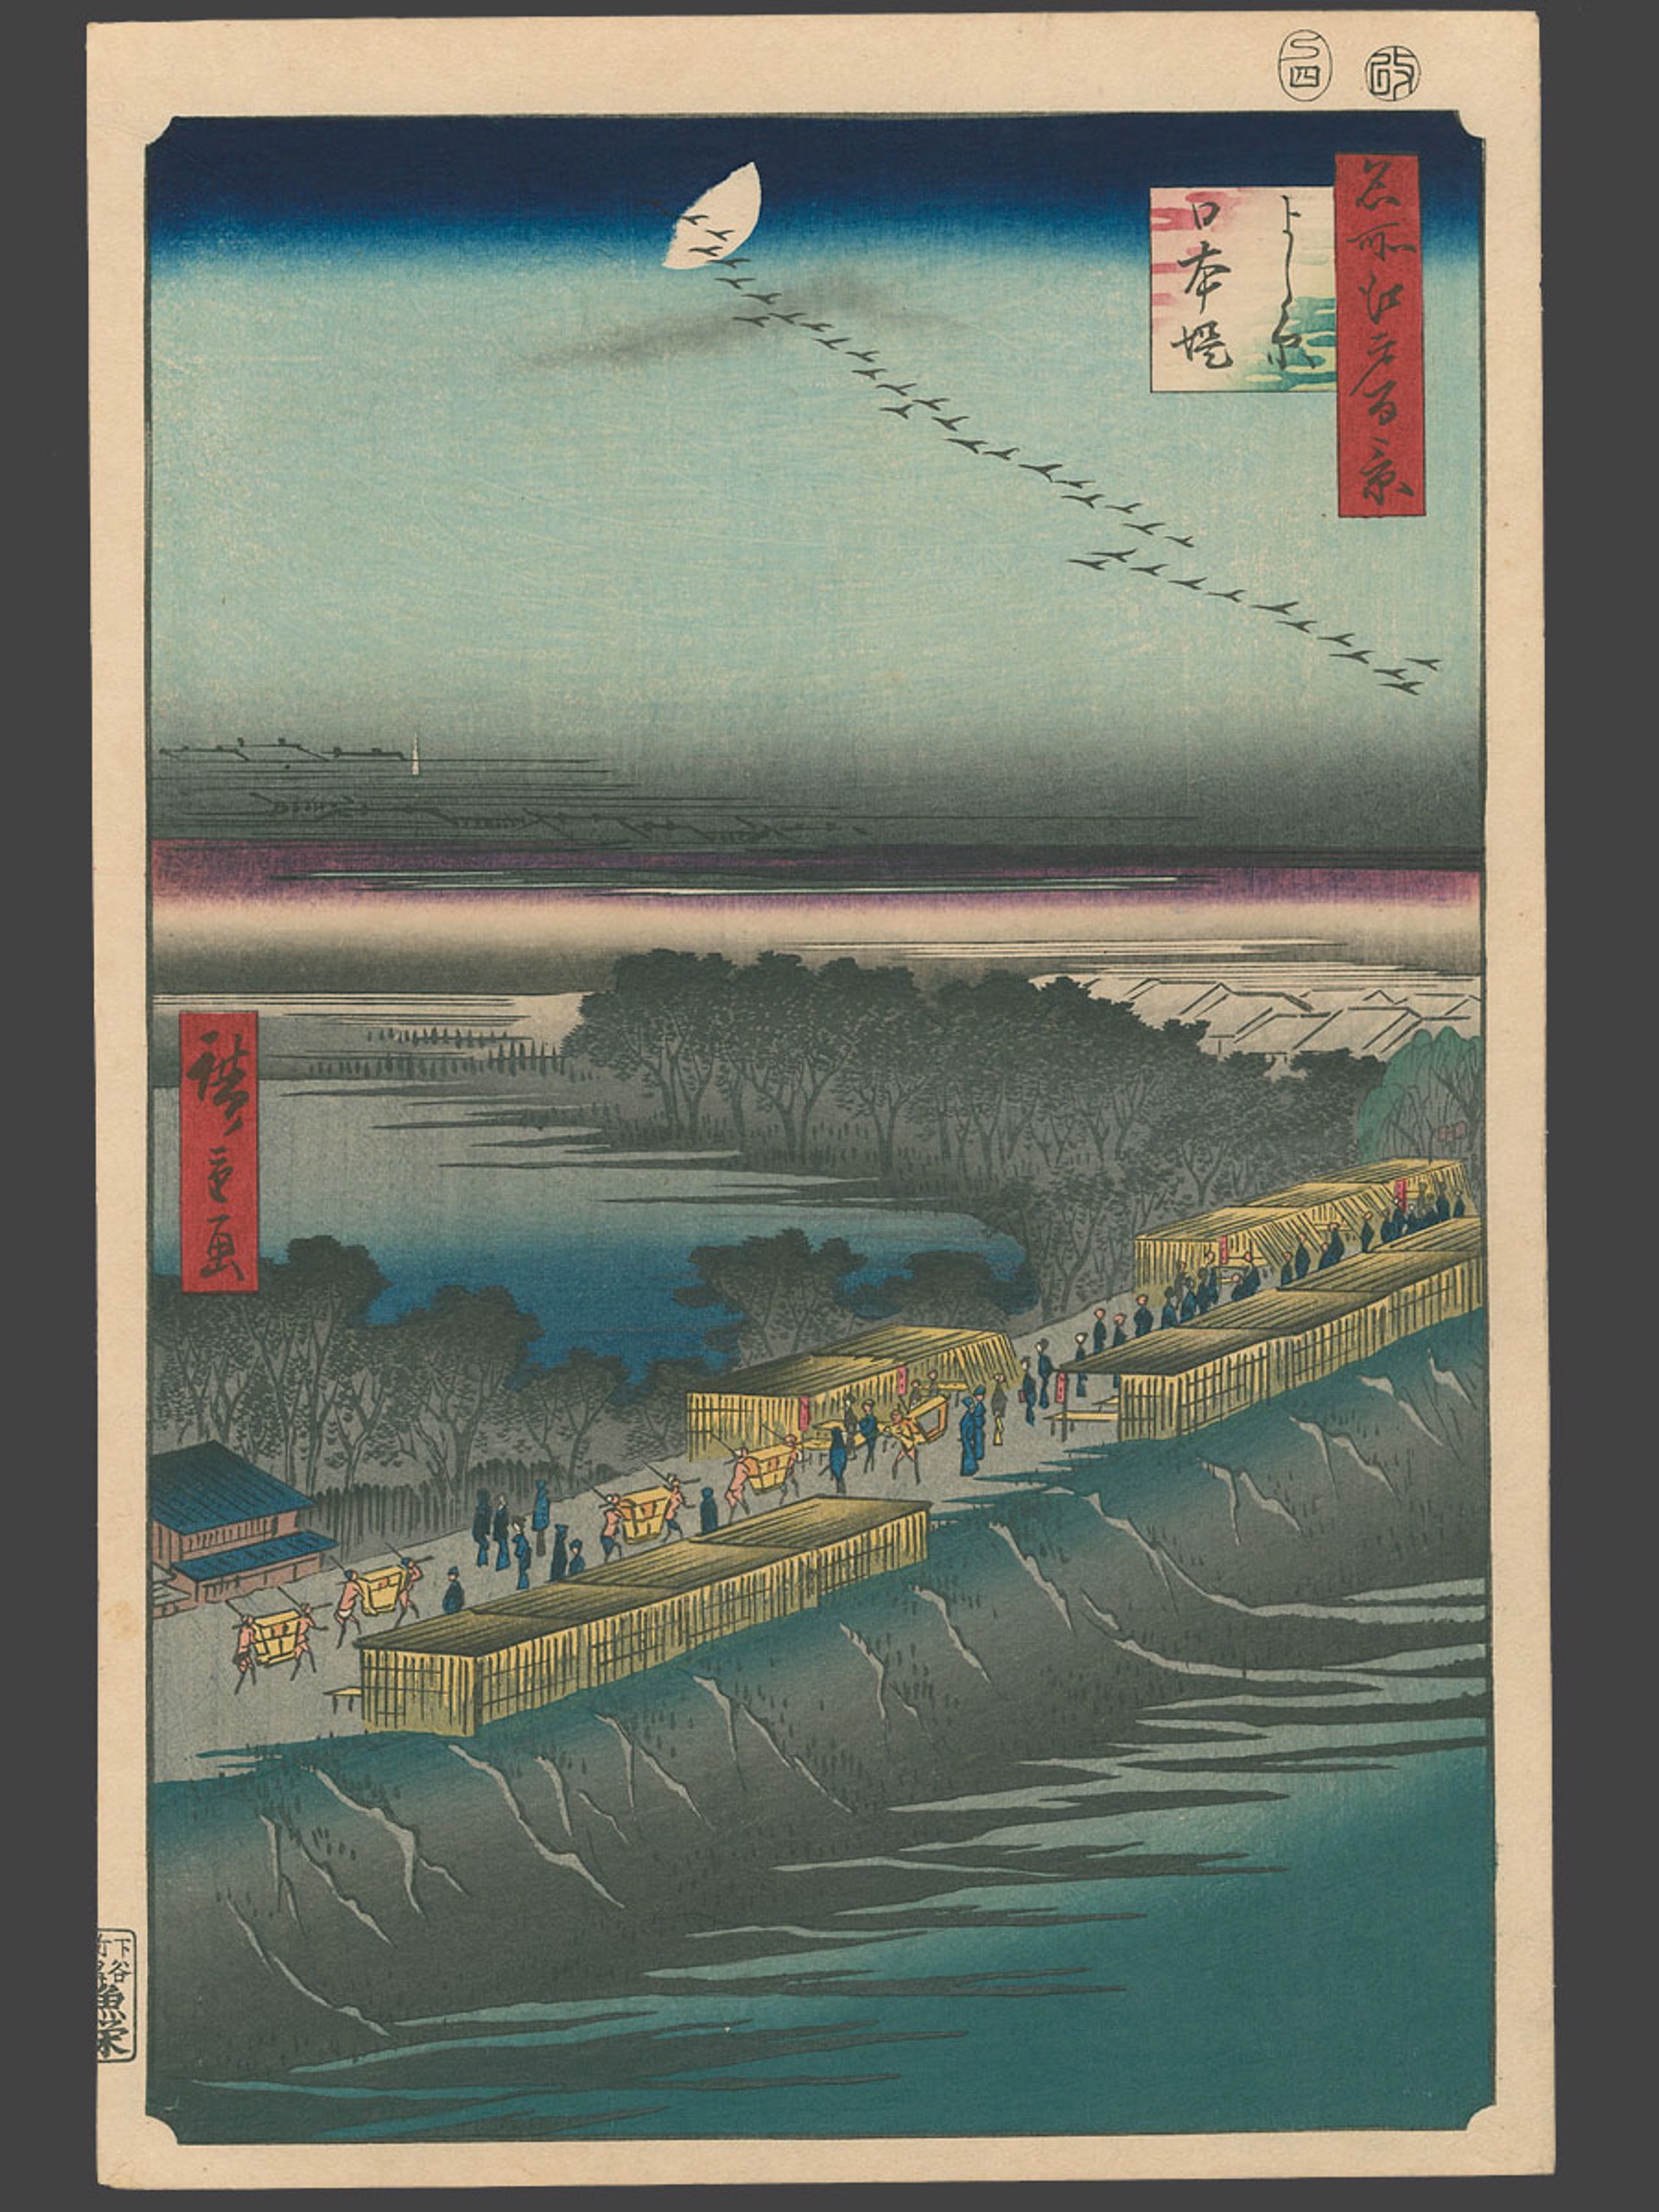 #100 Nihon Embankment, Yoshiwara 100 Views of Edo by Hiroshige